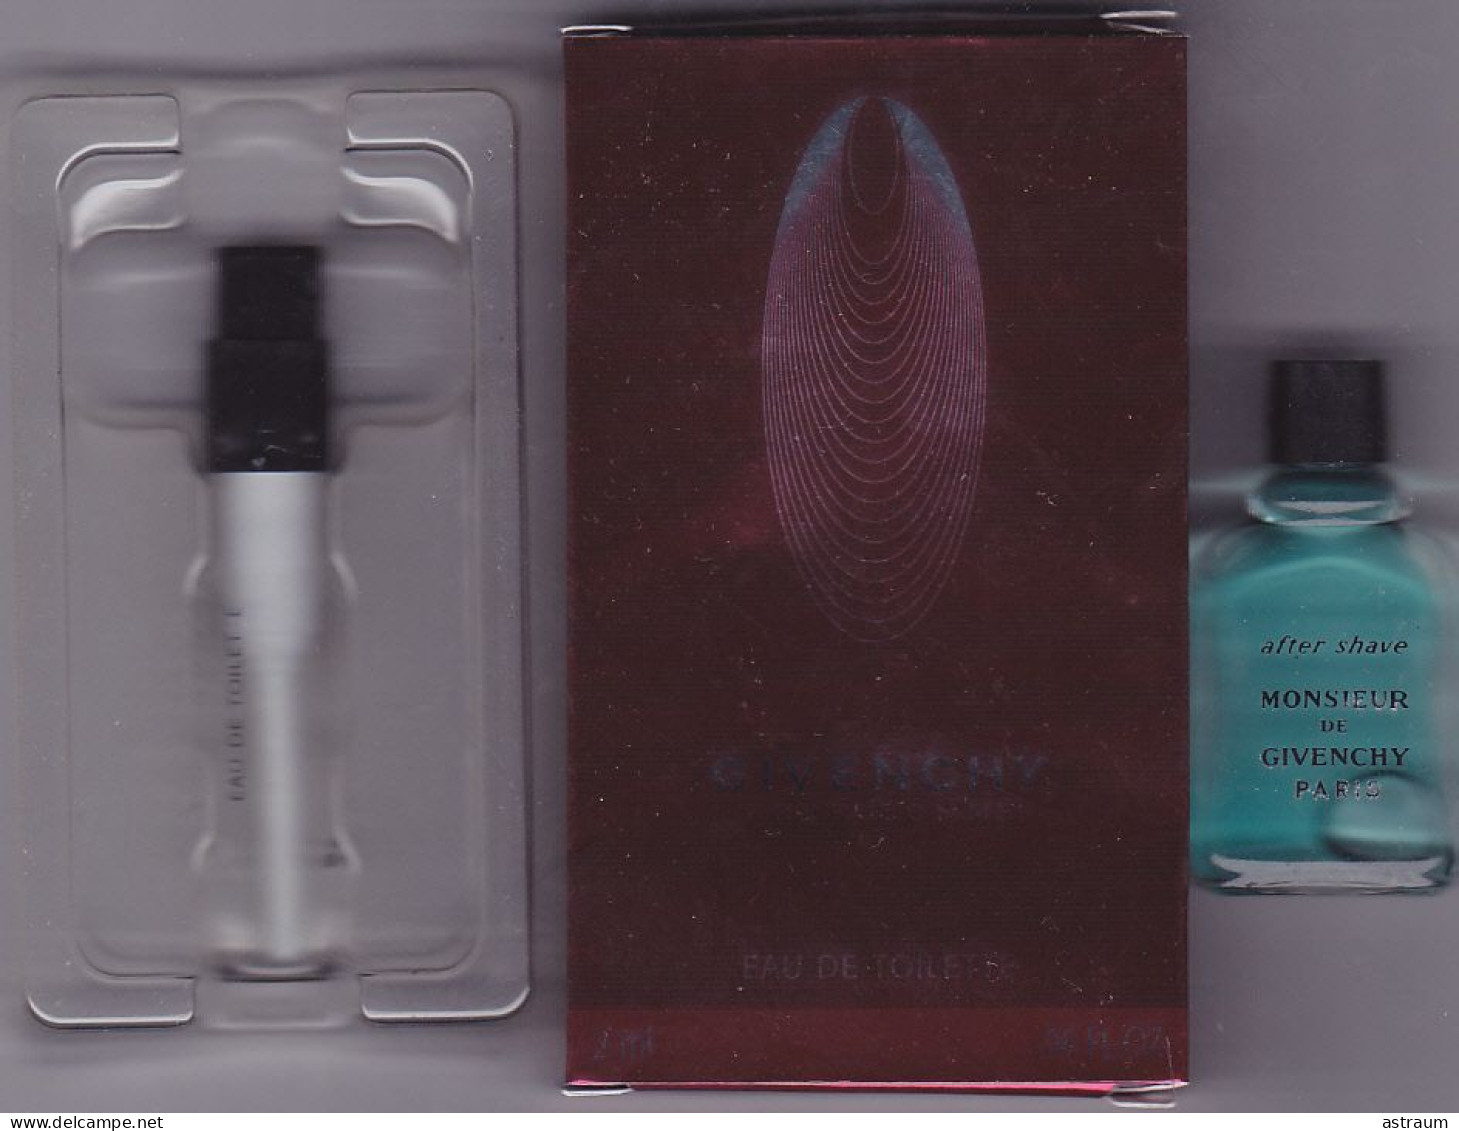 Lot 2 Miniature Vintage Parfum - Givenchy - EDT - Givenchy  & After Shave - Pleine Sans  Boite 4ml & Vaporisateur 2ml - Miniatures Hommes (sans Boite)